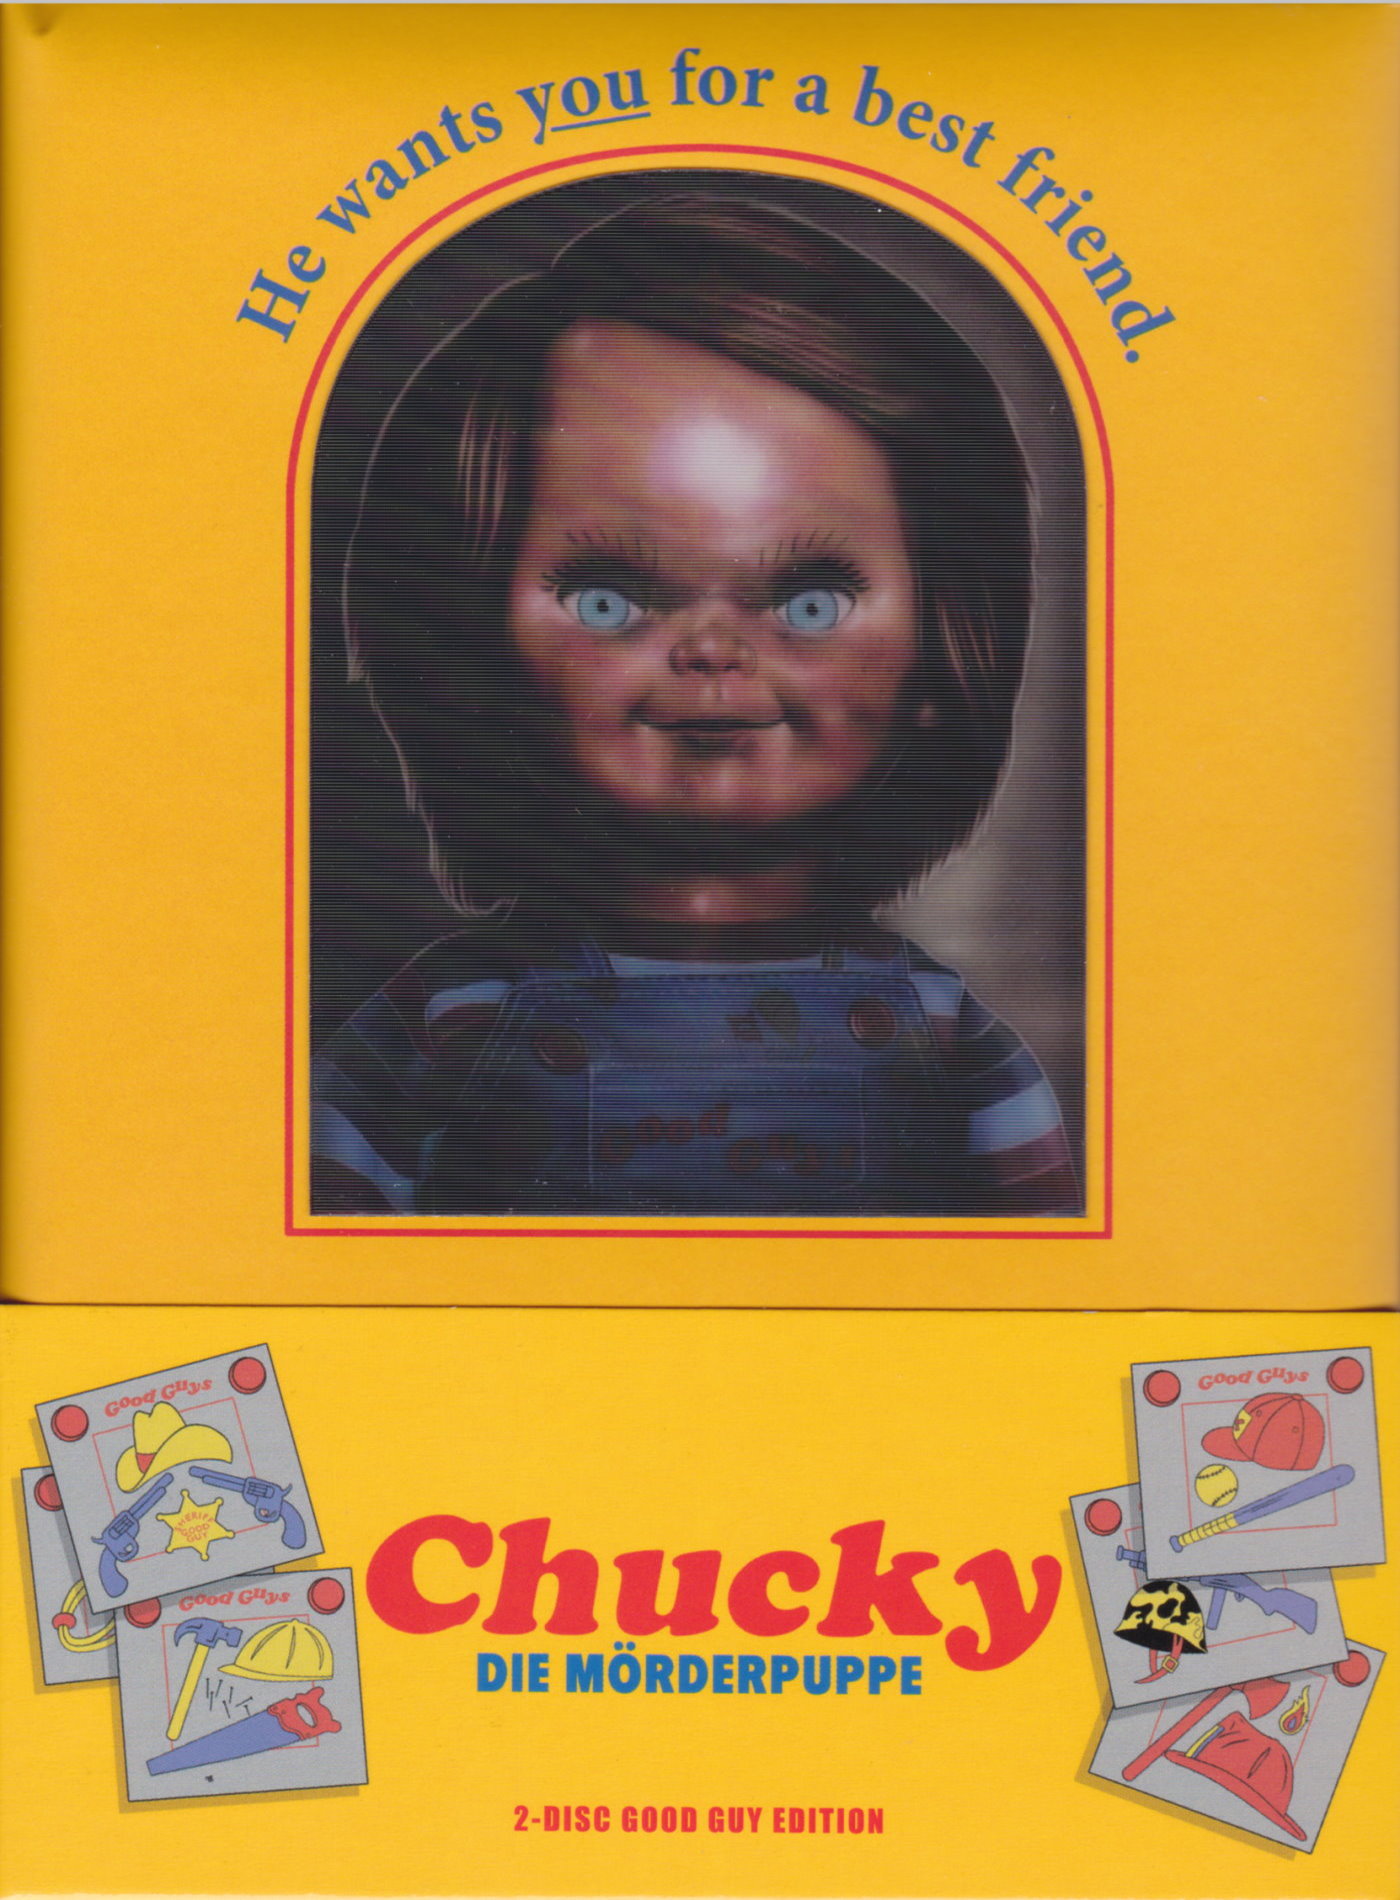 Cover - Chucky - Die Mörderpuppe.jpg